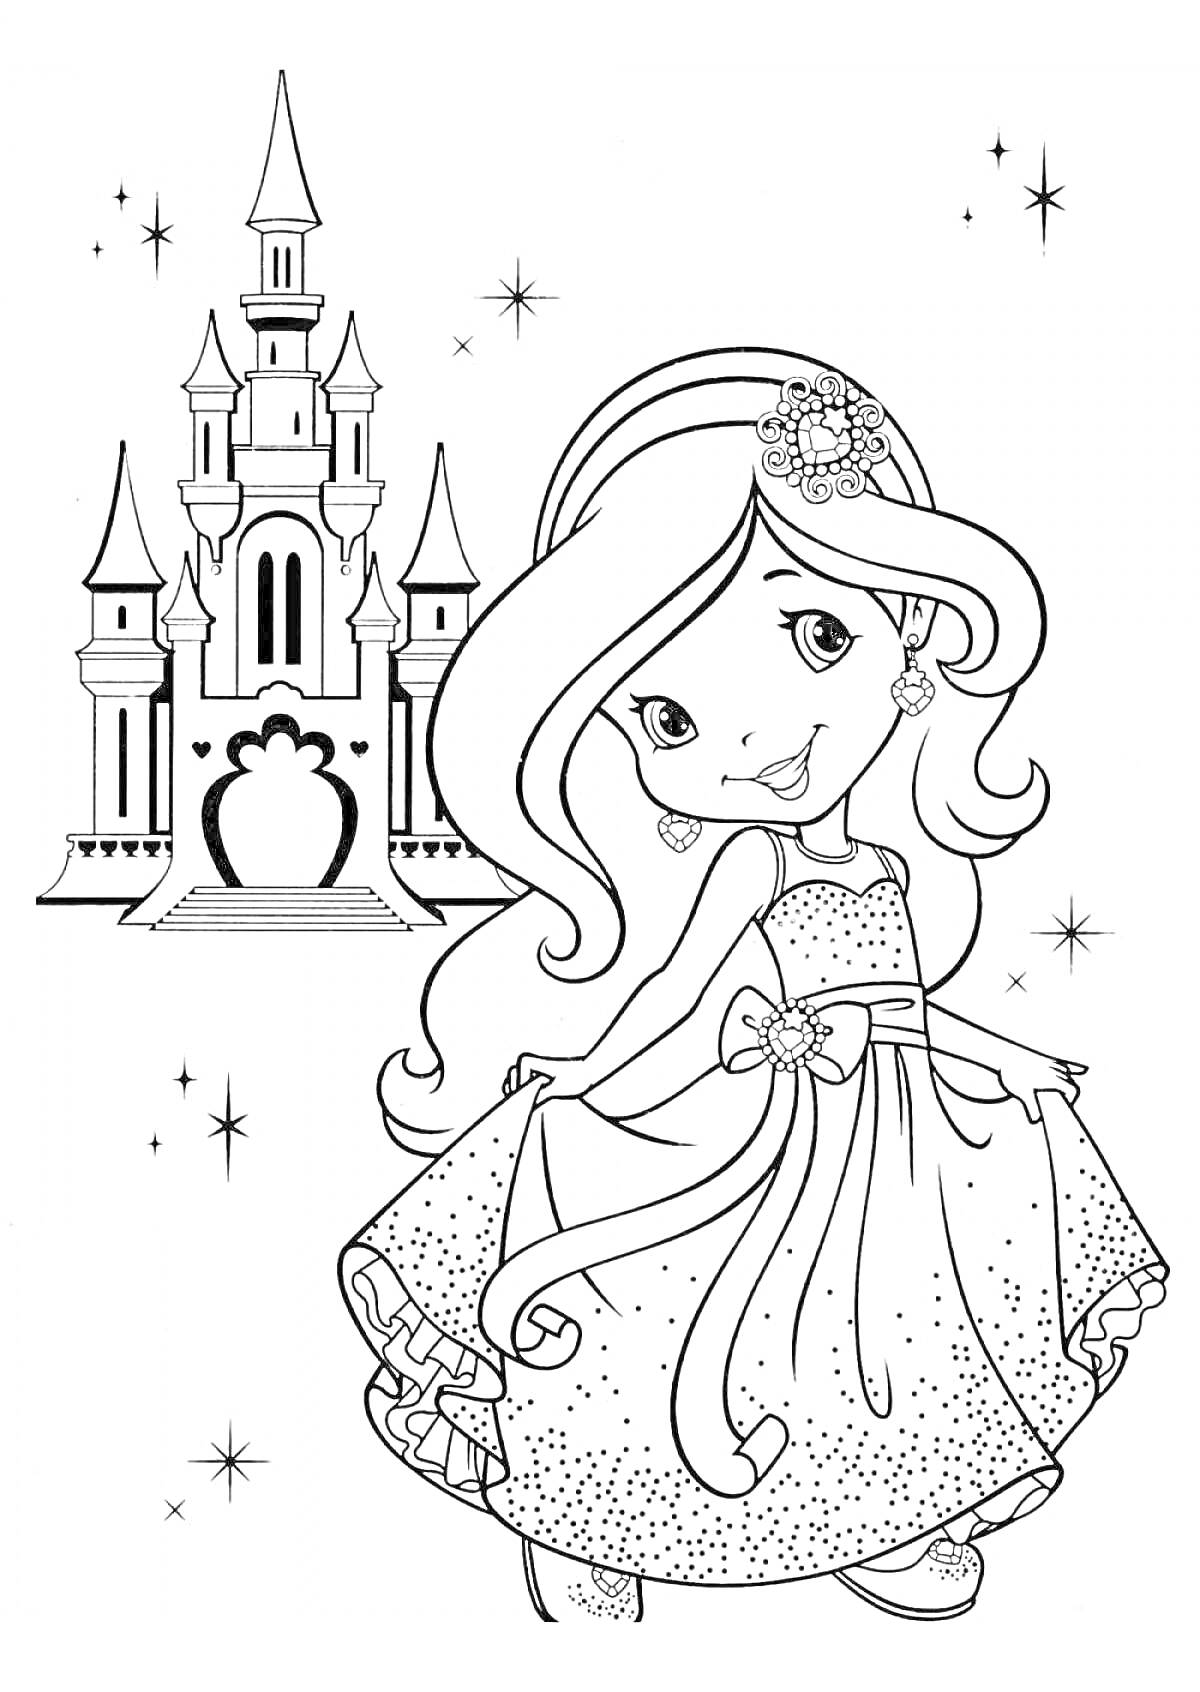 Раскраска Принцесса в платье перед замком с звёздочками